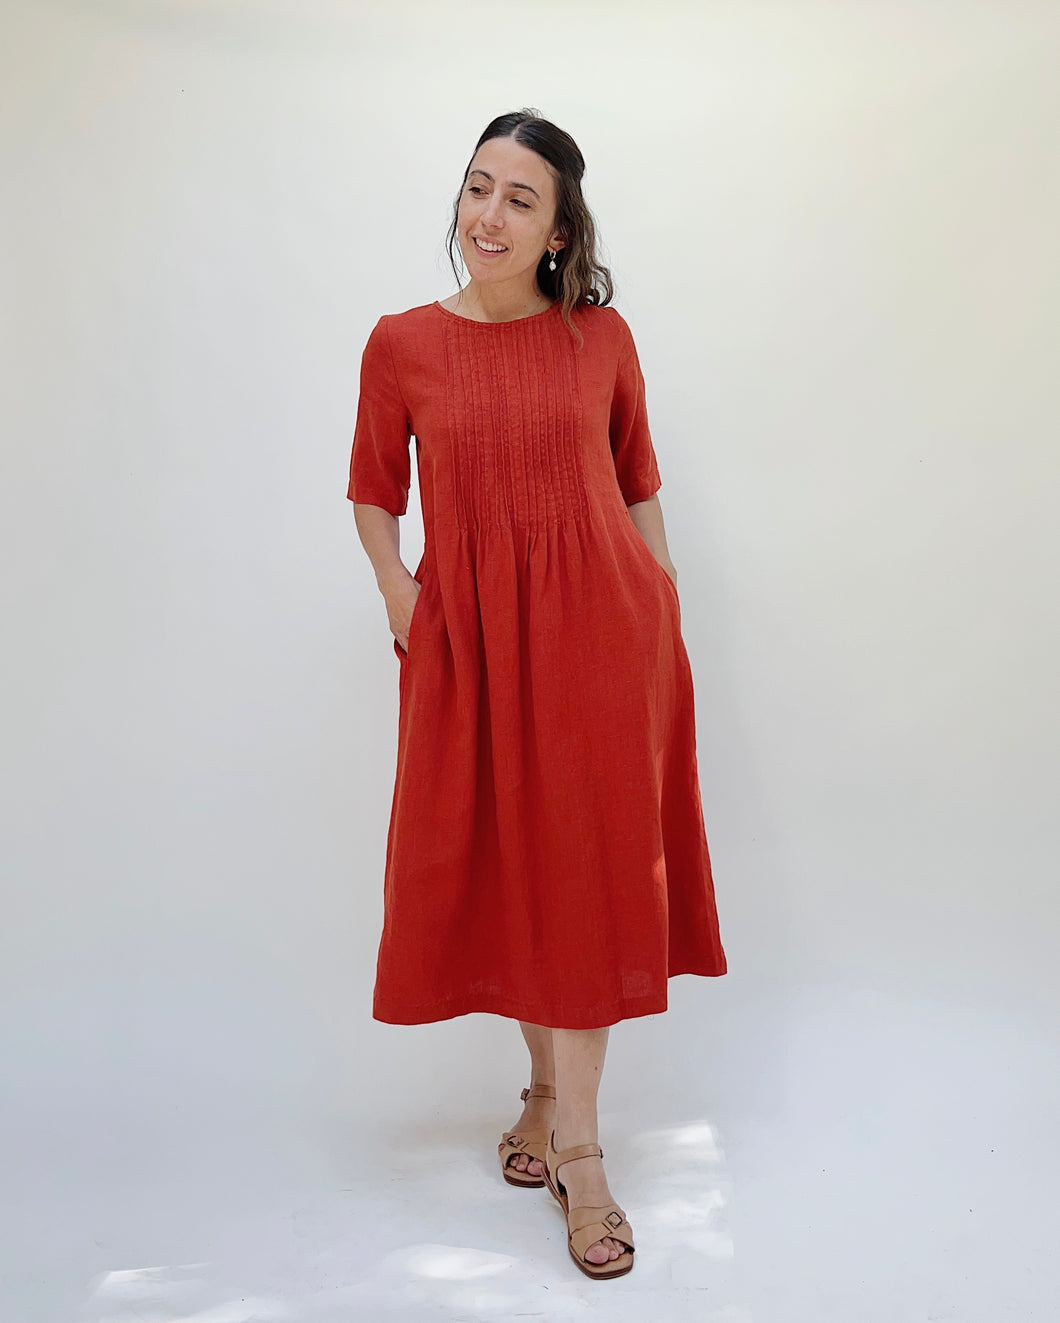 Yuvita | Pintuck Pleat Dress in Brick